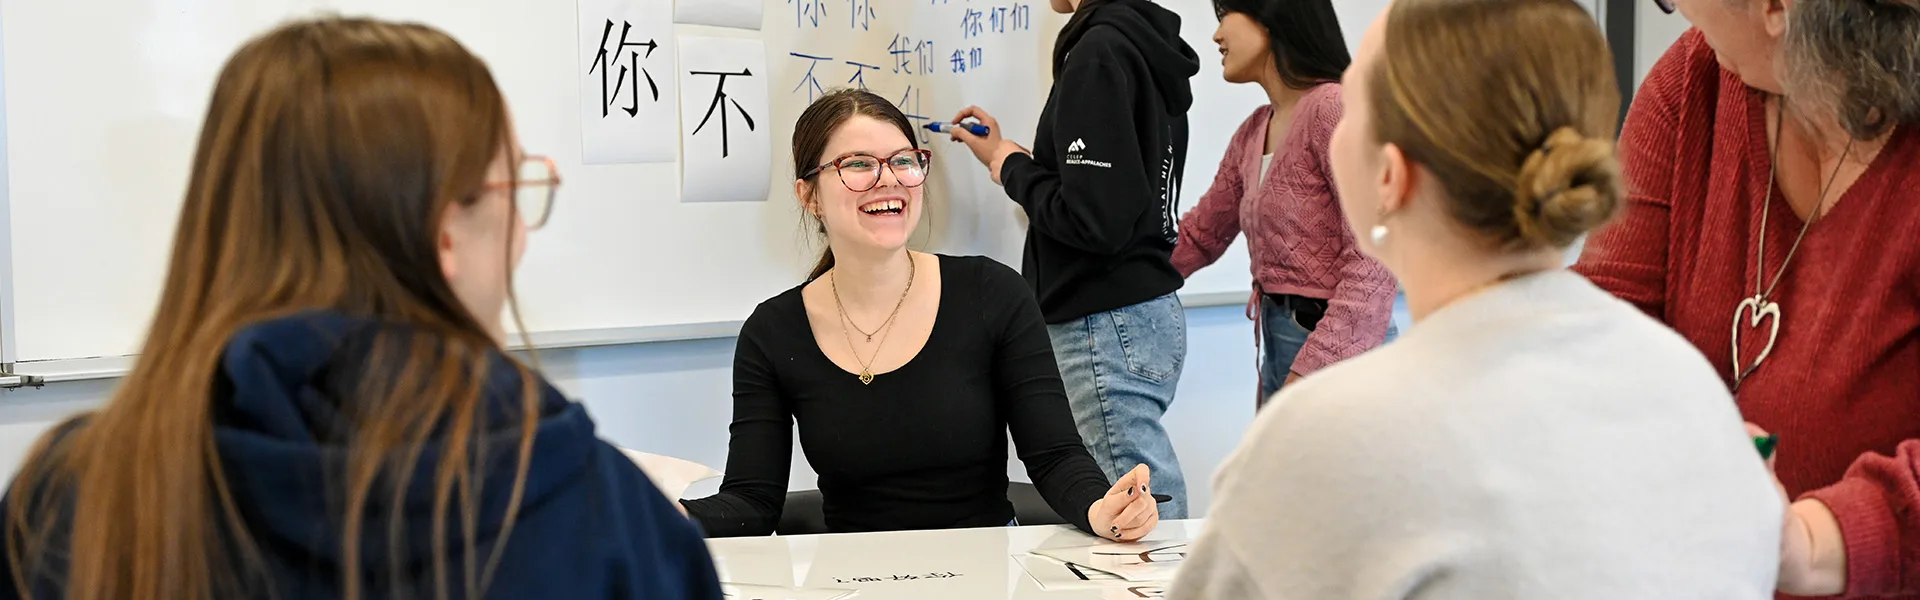 Étudiante souriante dans un cours de mandarin